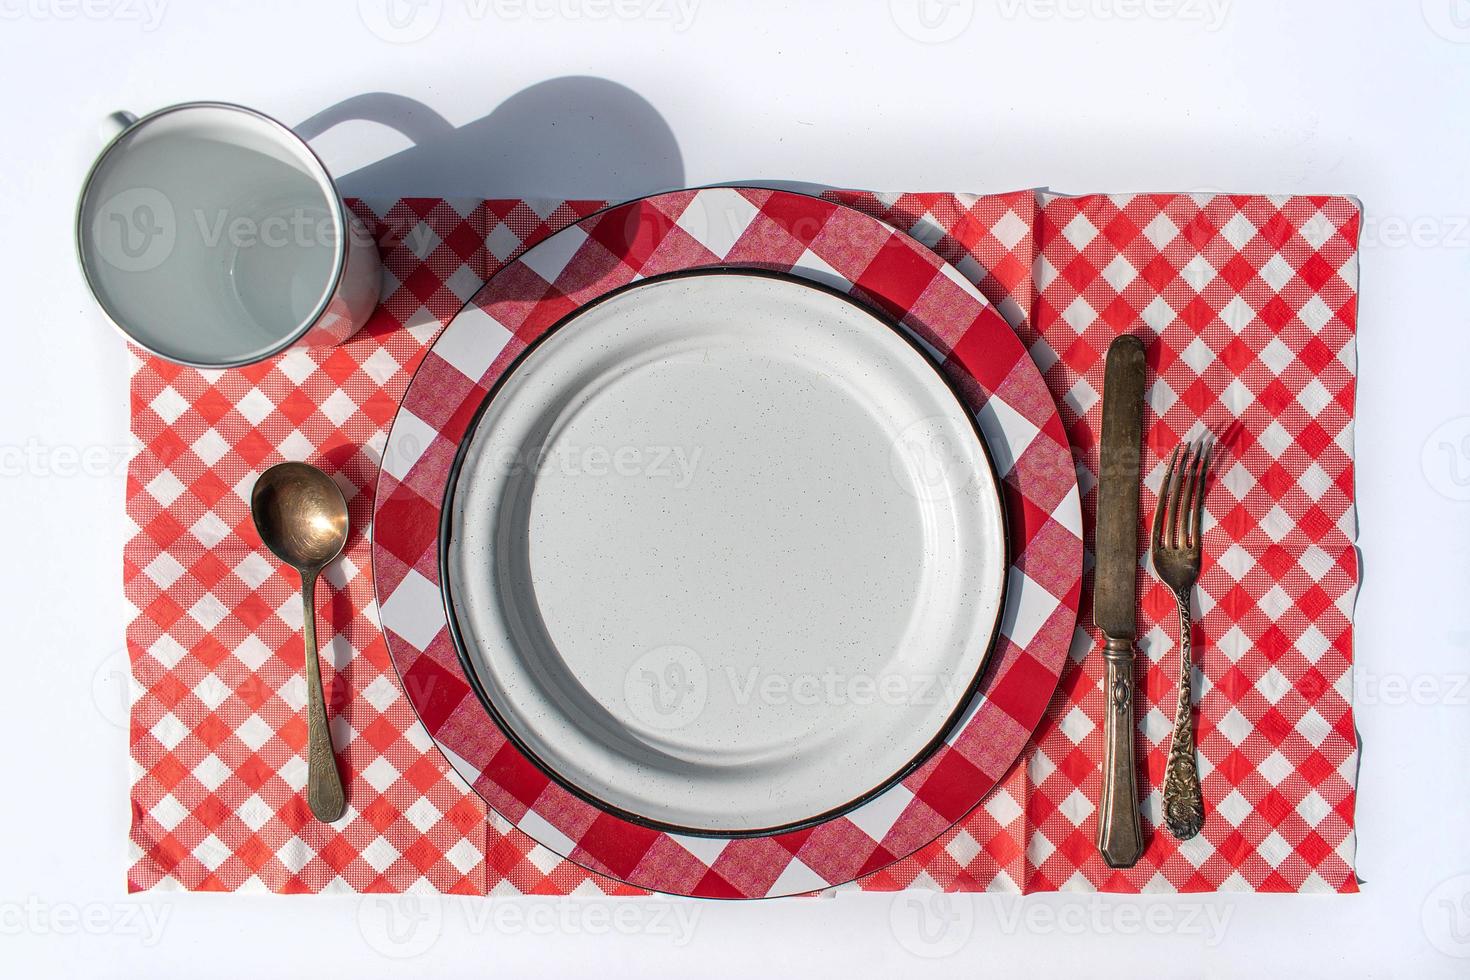 table de pique-nique à plat mise en place d'une assiette, d'une tasse, d'argenterie et d'une nappe à carreaux photo